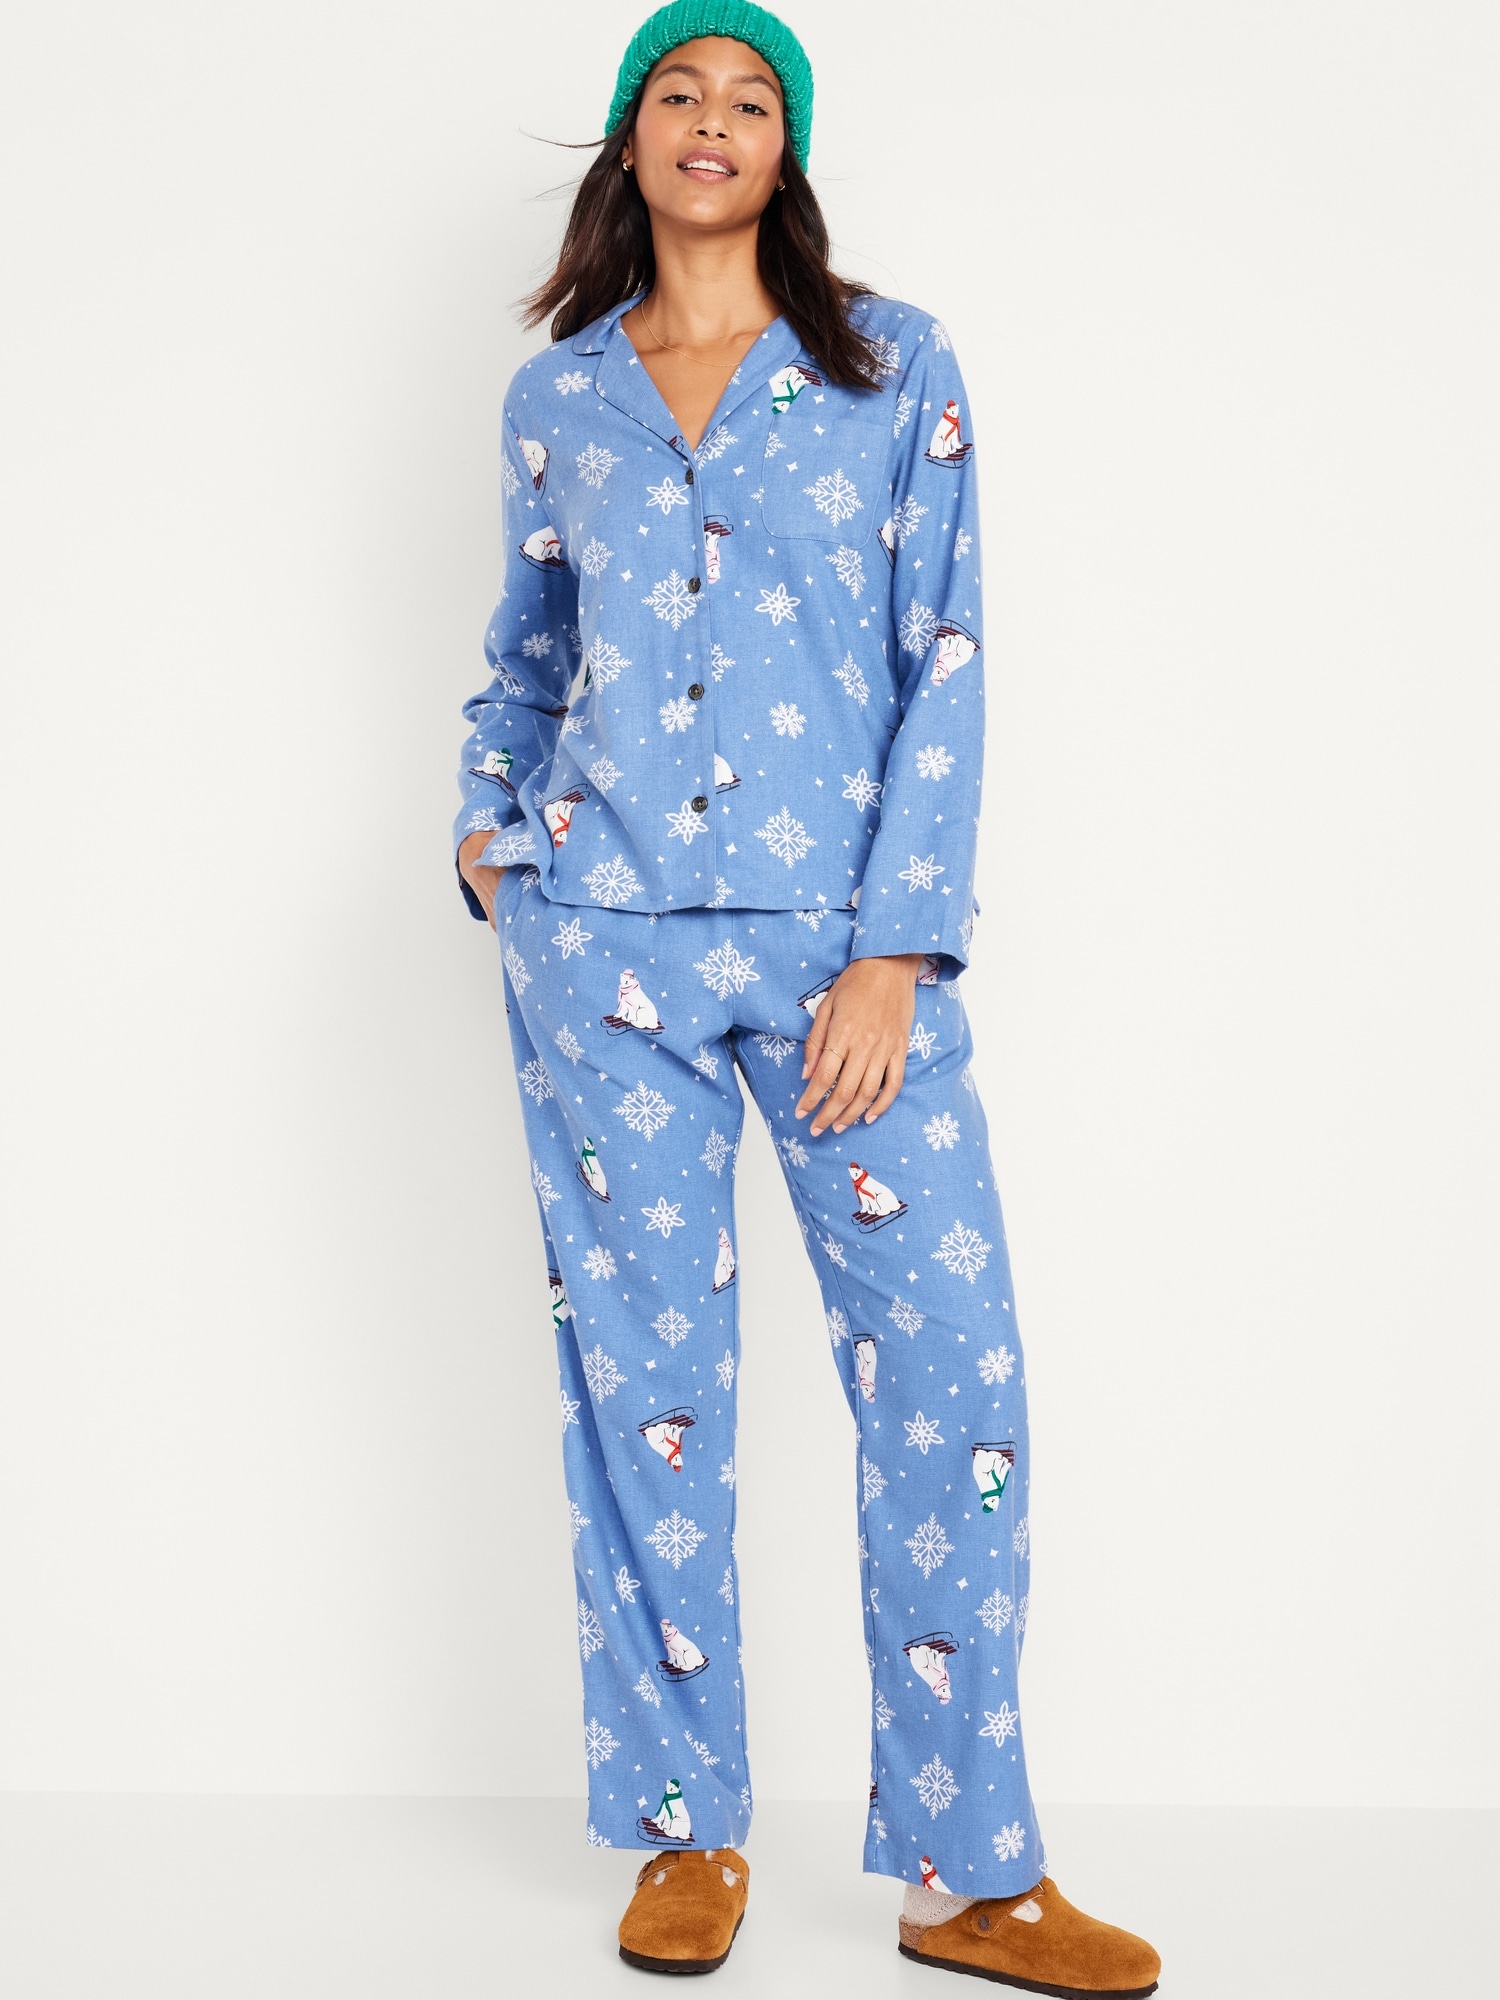 Women's Winter Pajamas